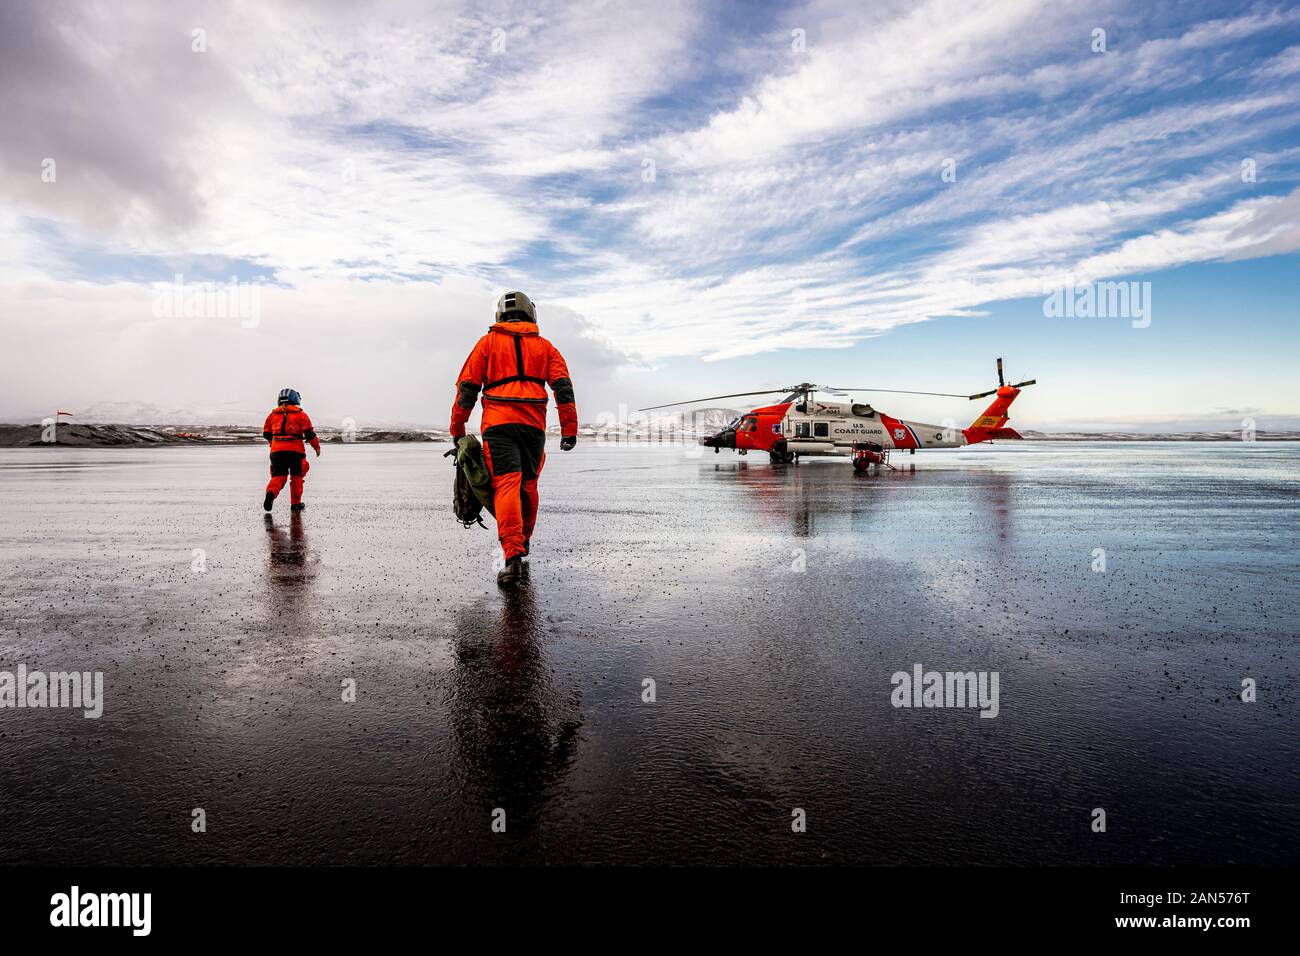 Coast Guard Base Kodiak ausili alla navigazione (ATON) organi di servizio a piedi verso un MH-60 elicottero Jayhawk nella baia di freddo, Alaska. La ATON membri distribuire a bordo di elicotteri per funzionamento in avanti posizioni intorno all'Alaska per la riparazione e la manutenzione di navigazione marittima aids. L'elicottero equipaggi sono di vitale importanza per ottenere questi ATON i membri a più postazioni remote che non sono accessibili tramite la barca. Stati Uniti Coast Guard foto di Sottufficiali di prima classe Bradley Pigage. Foto Stock